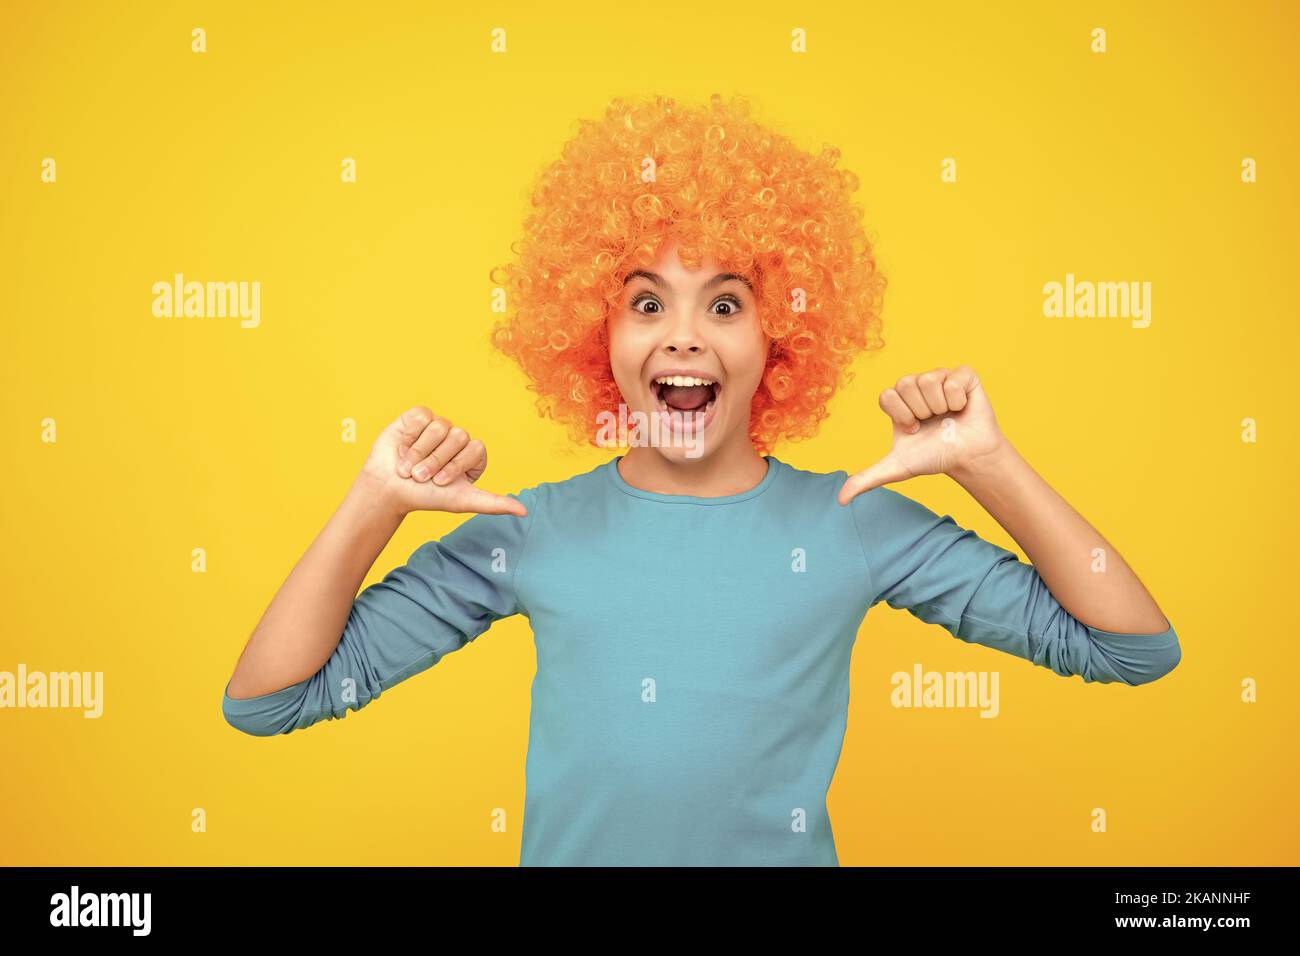 Belle adolescente dans perruque isolée sur jaune. Perruque clown amusante. Adolescent excité, heureux surpris et surjoyeux émotions. Banque D'Images